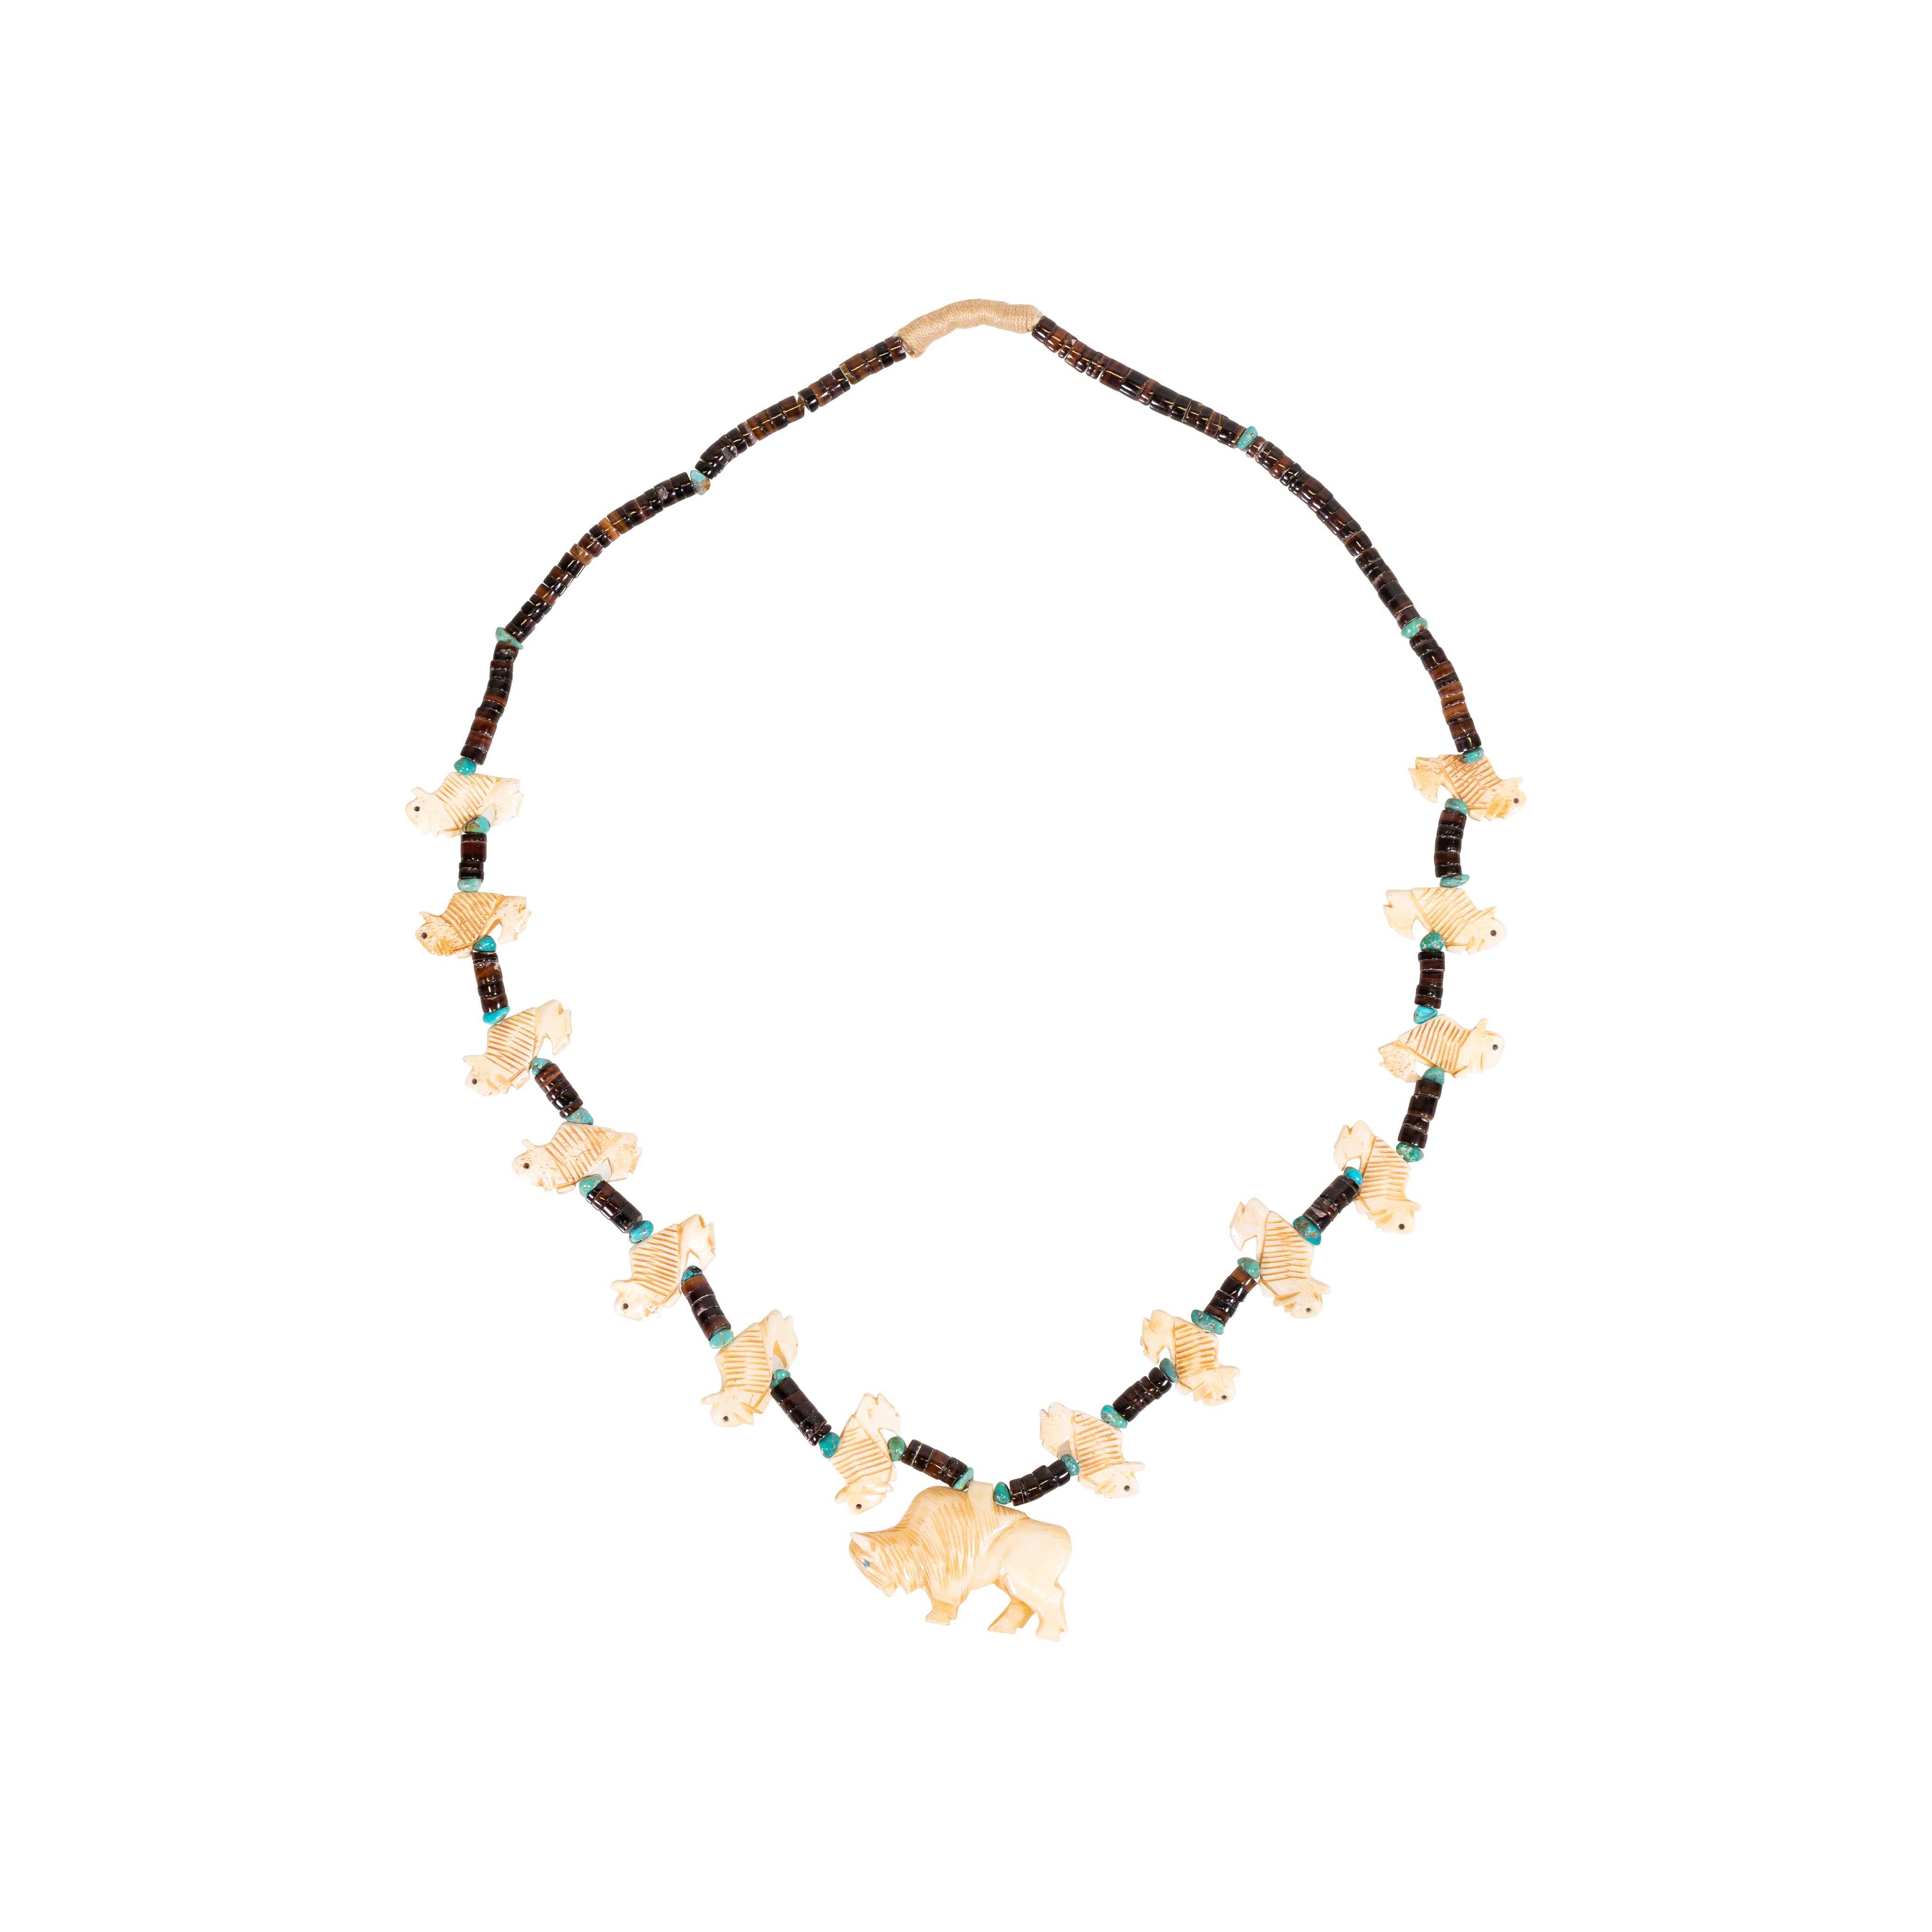 Buffalo Fetish Necklace, Jewelry, Necklace, Native